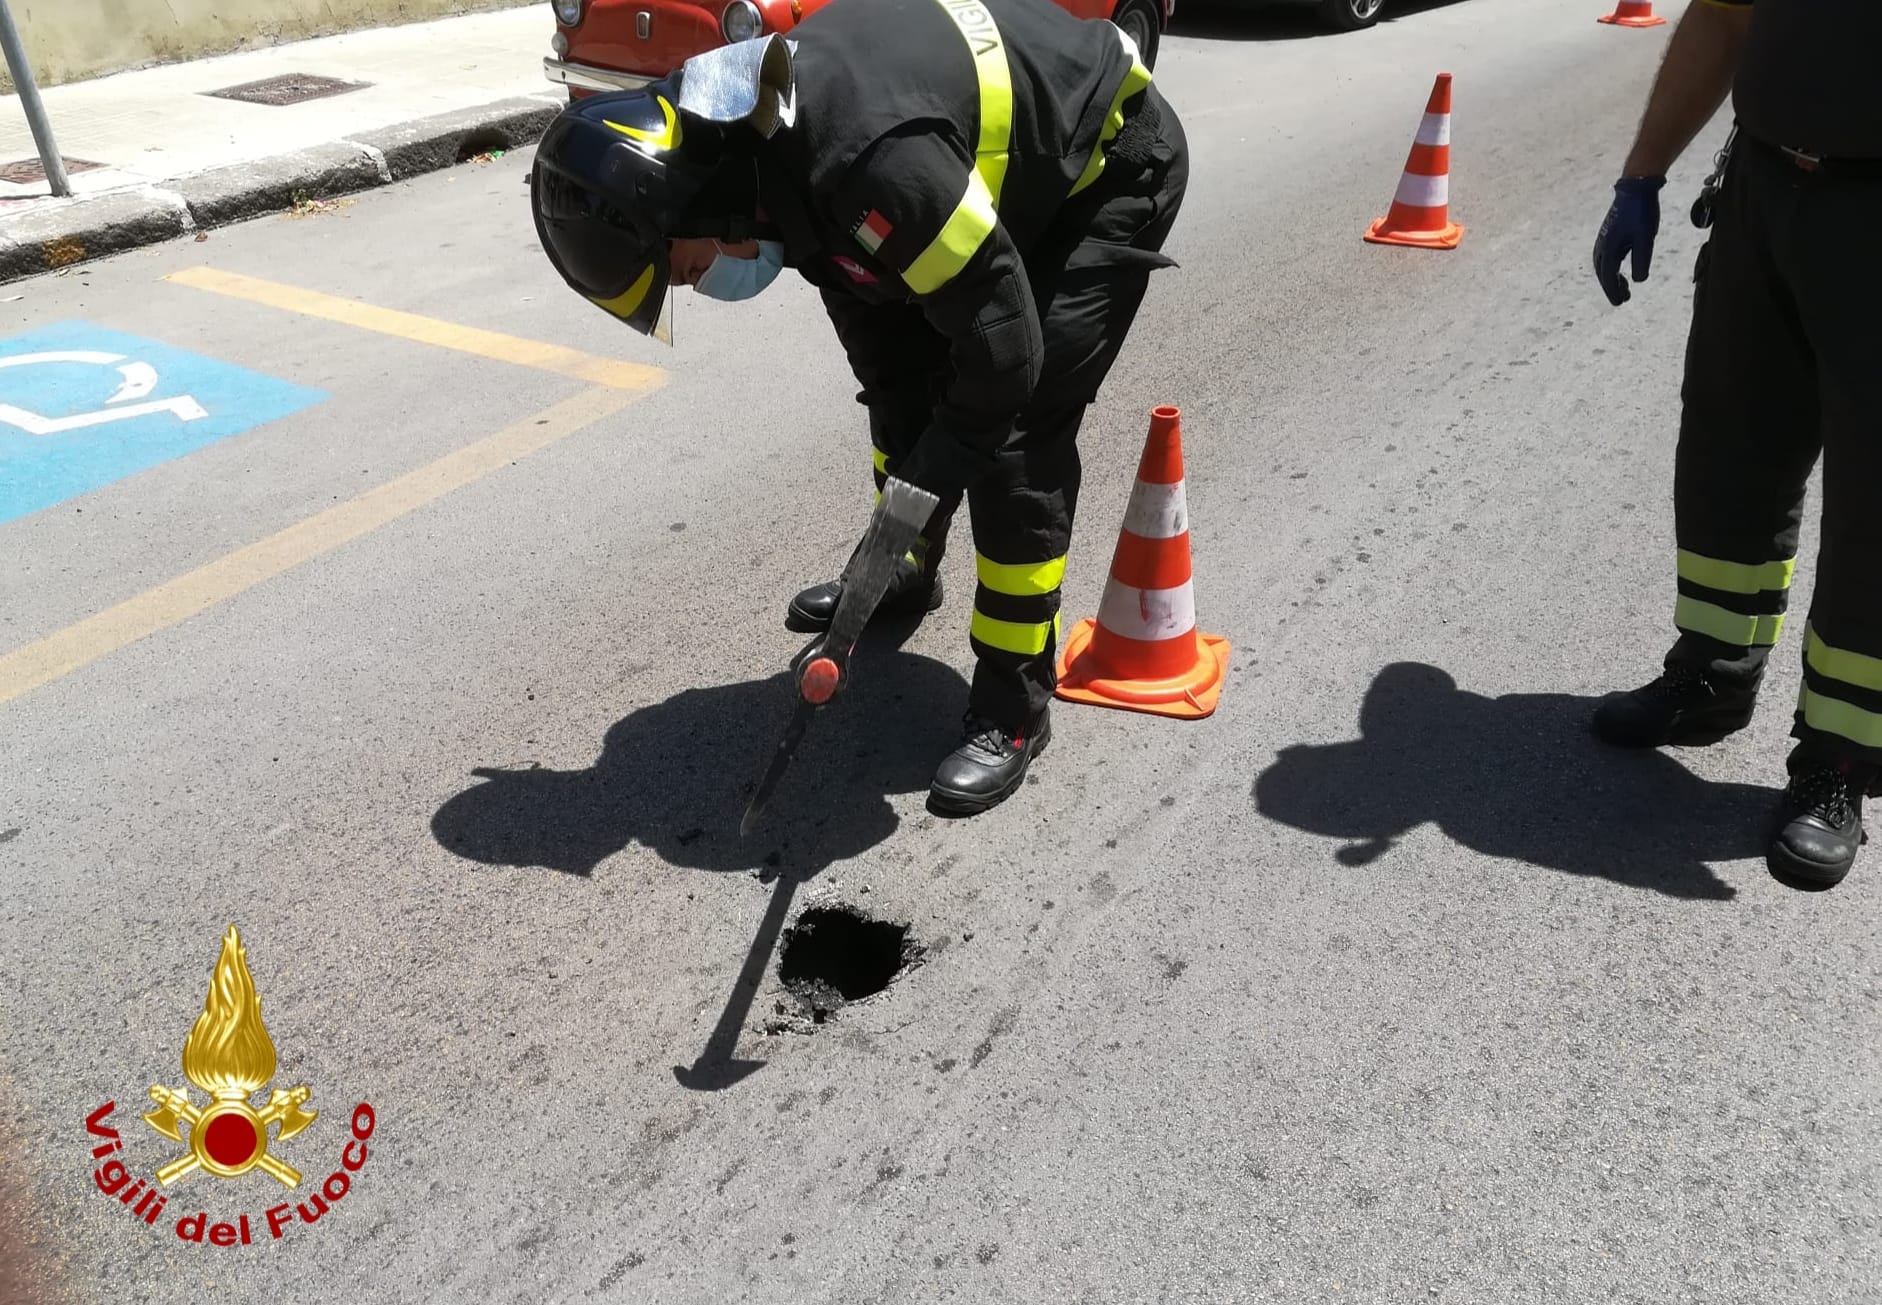 Fori nell'asfalto: VVF verificano sicurezza manto stradale